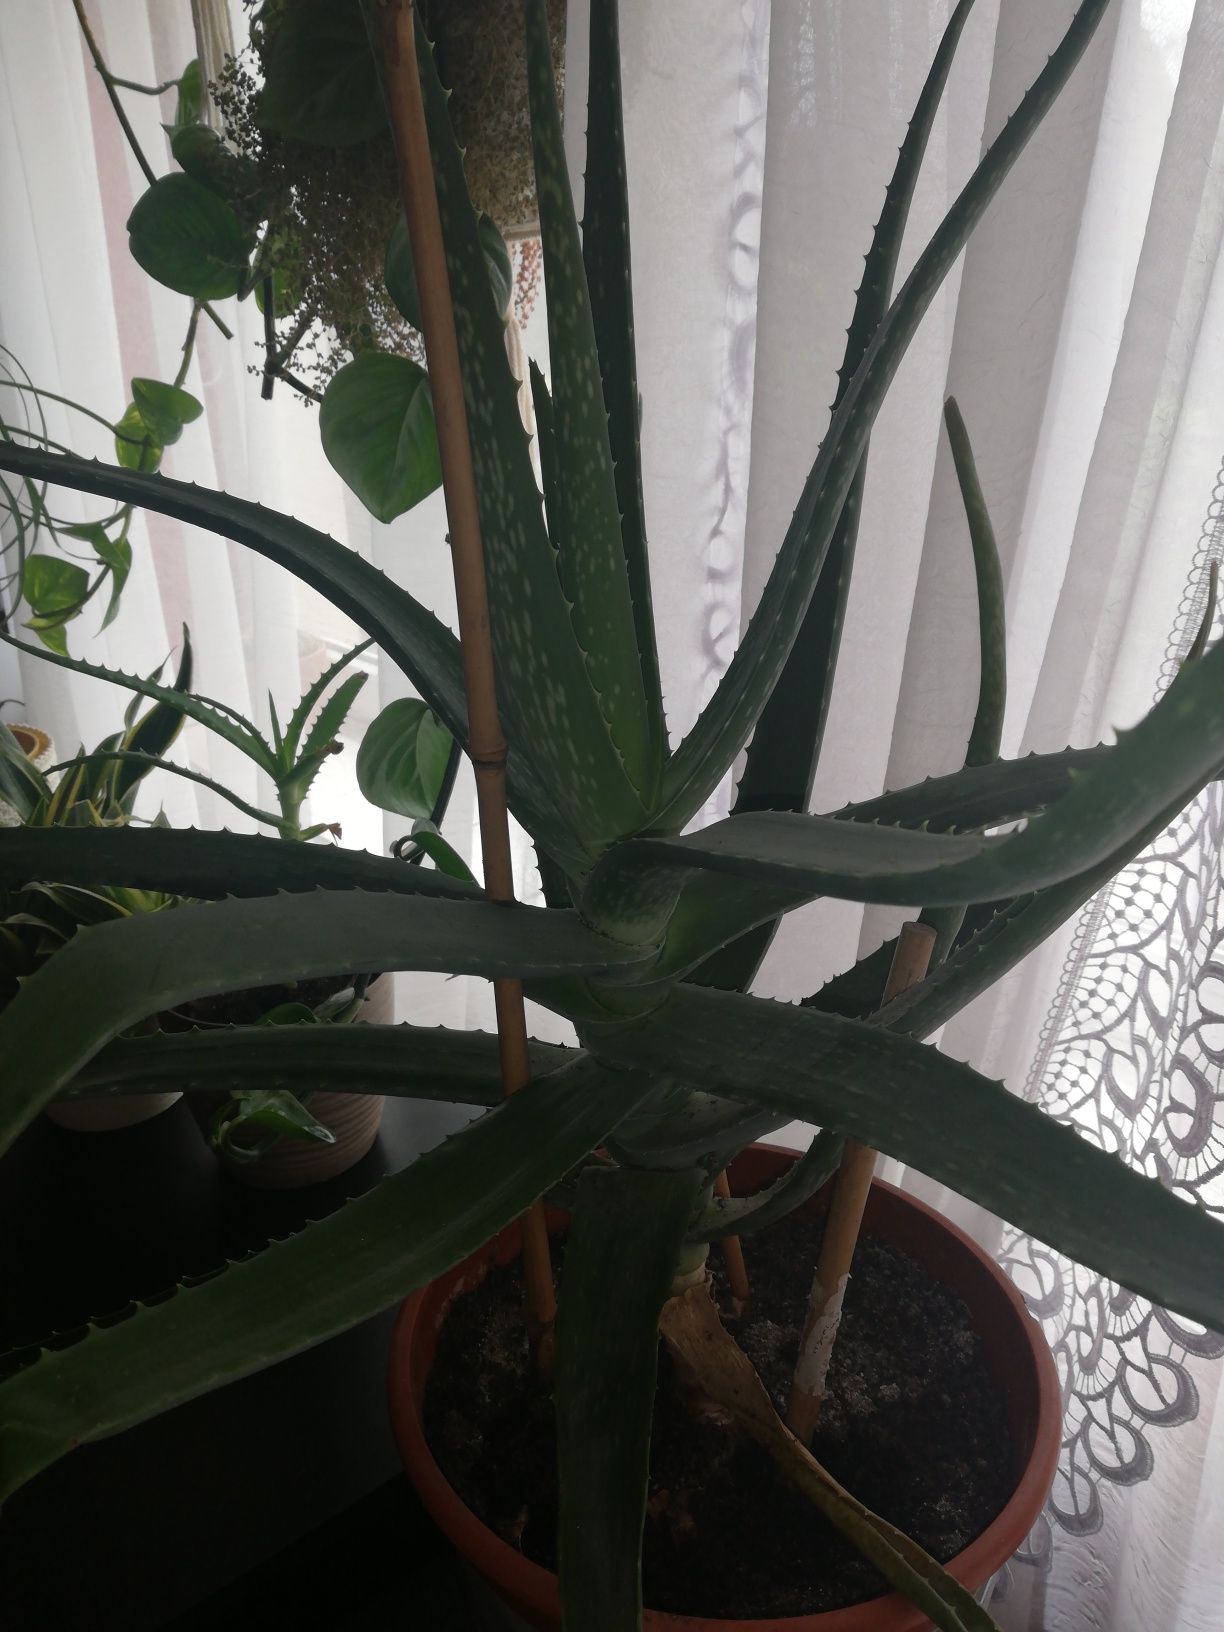 Aloes leczniczy aloe Vera bardzo duży